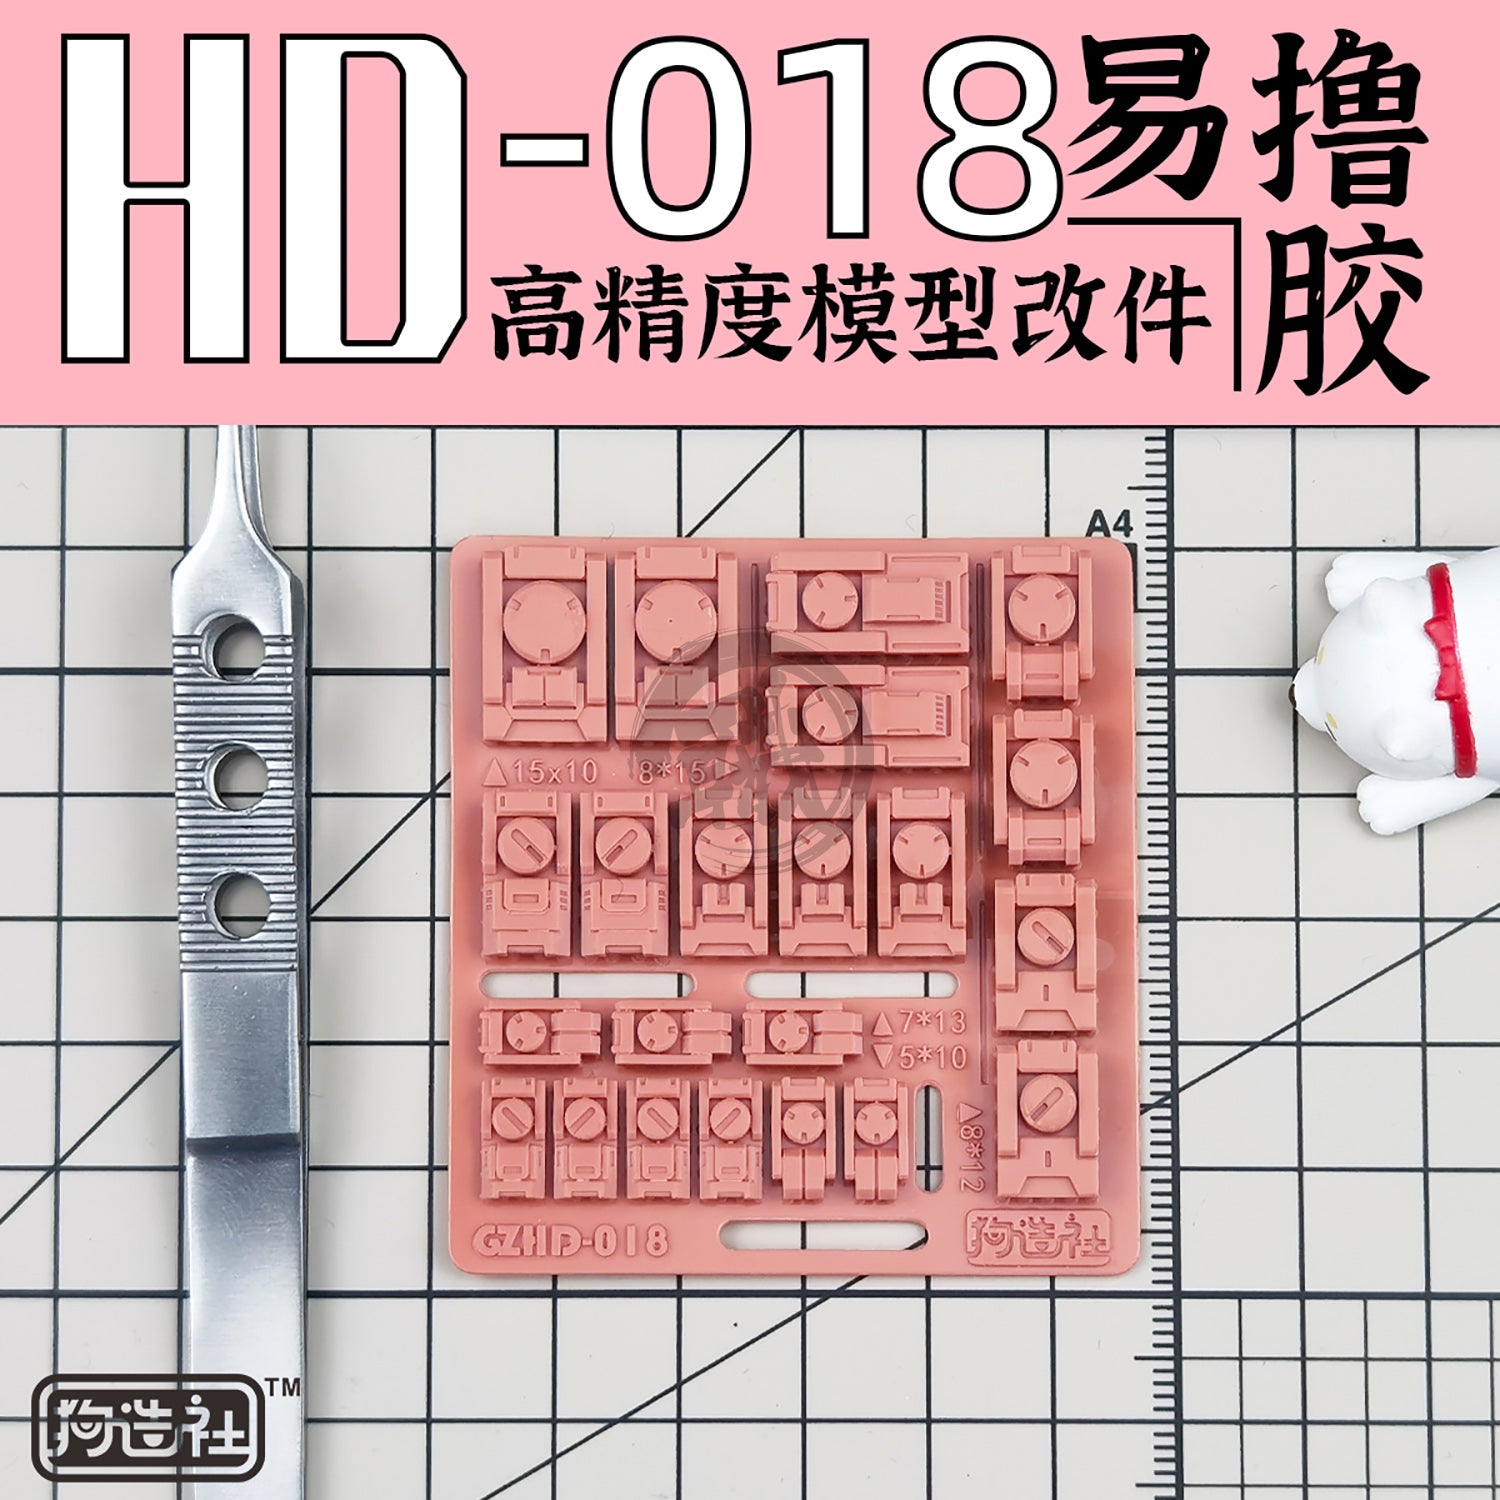 GZ-HD-018 - ShokuninGunpla